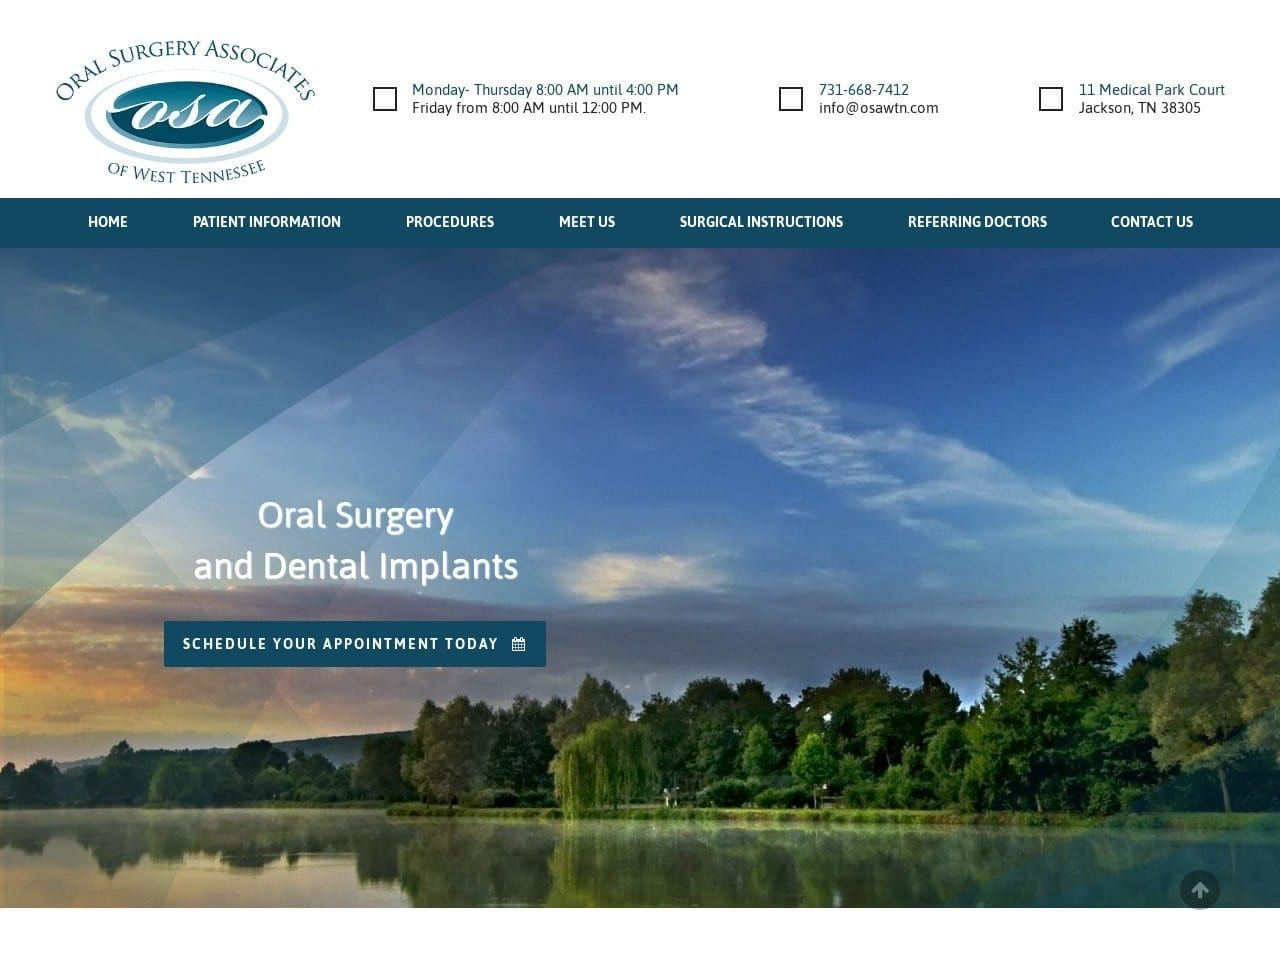 Oral Surgery Associates of W Tn Website Screenshot from osawtn.com